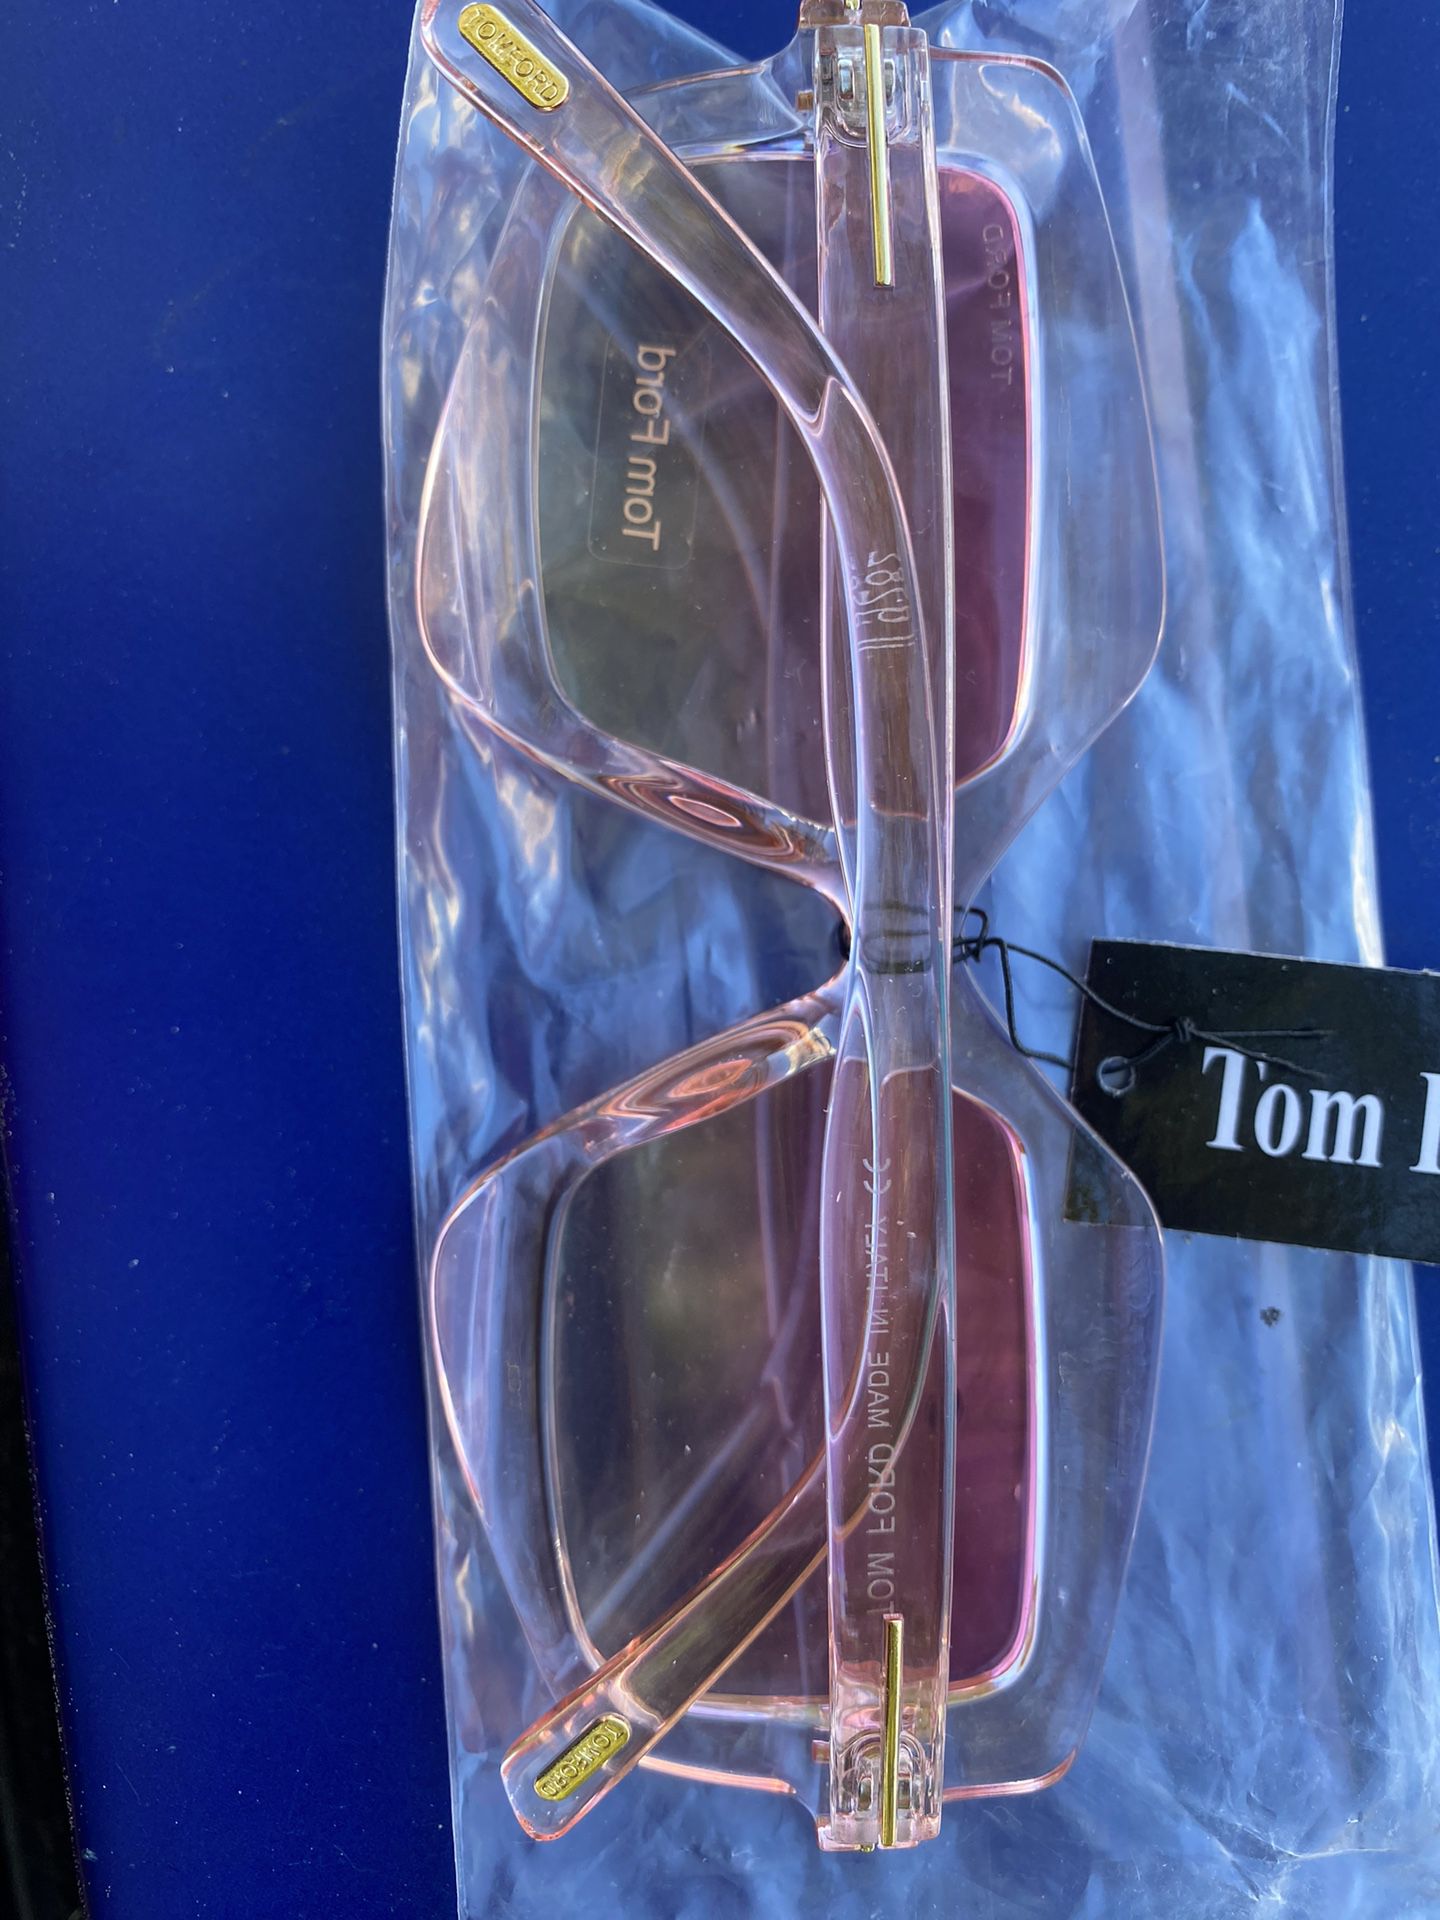 Tom Ford Glasses 